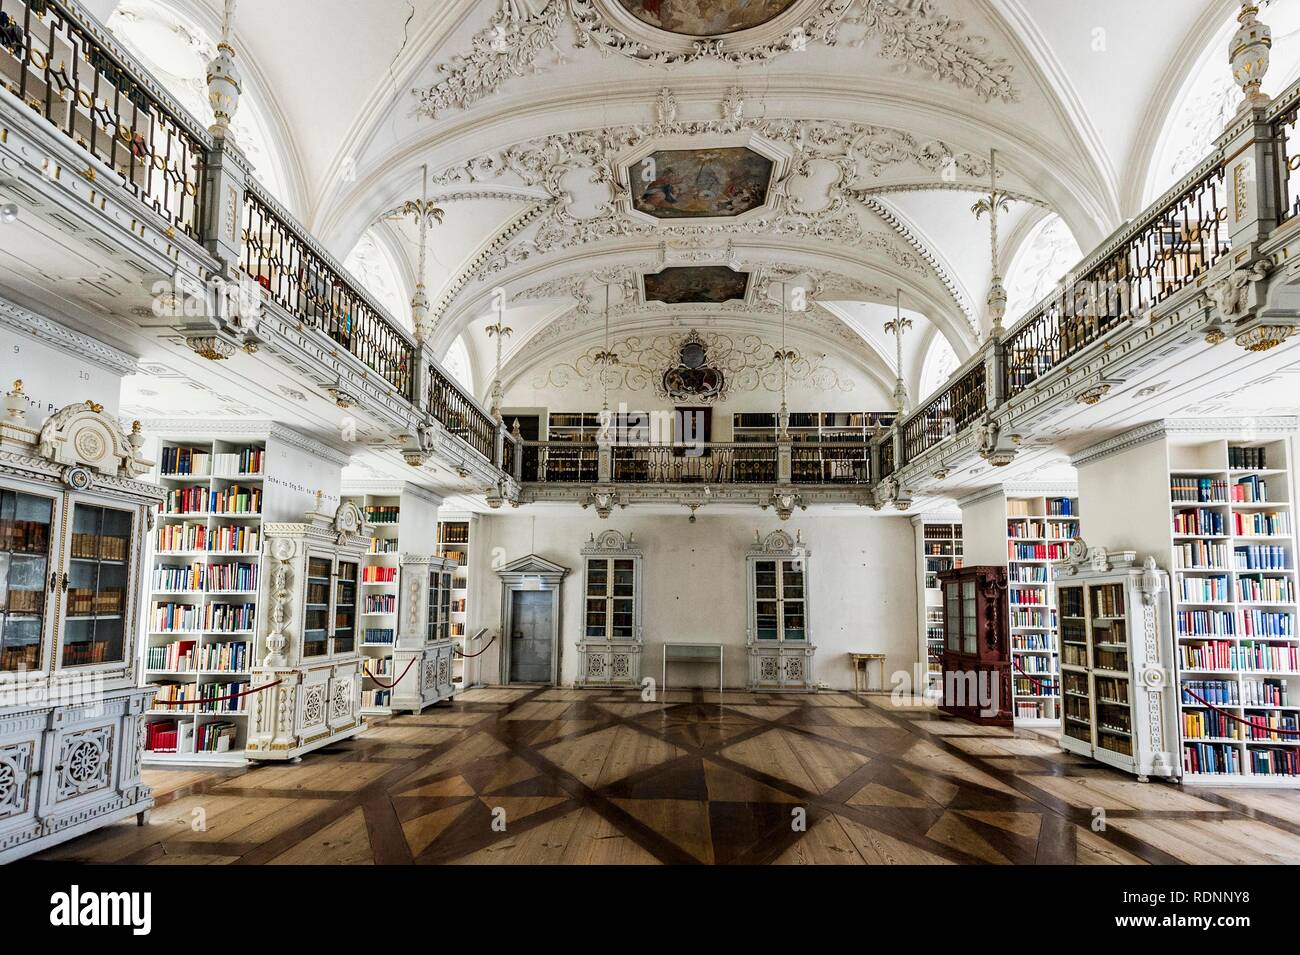 Biblioteca Abadía Imperial Salem, el monasterio cisterciense, Linzgau, el lago de Constanza, en el Estado federado de Baden-Württemberg, Alemania Foto de stock